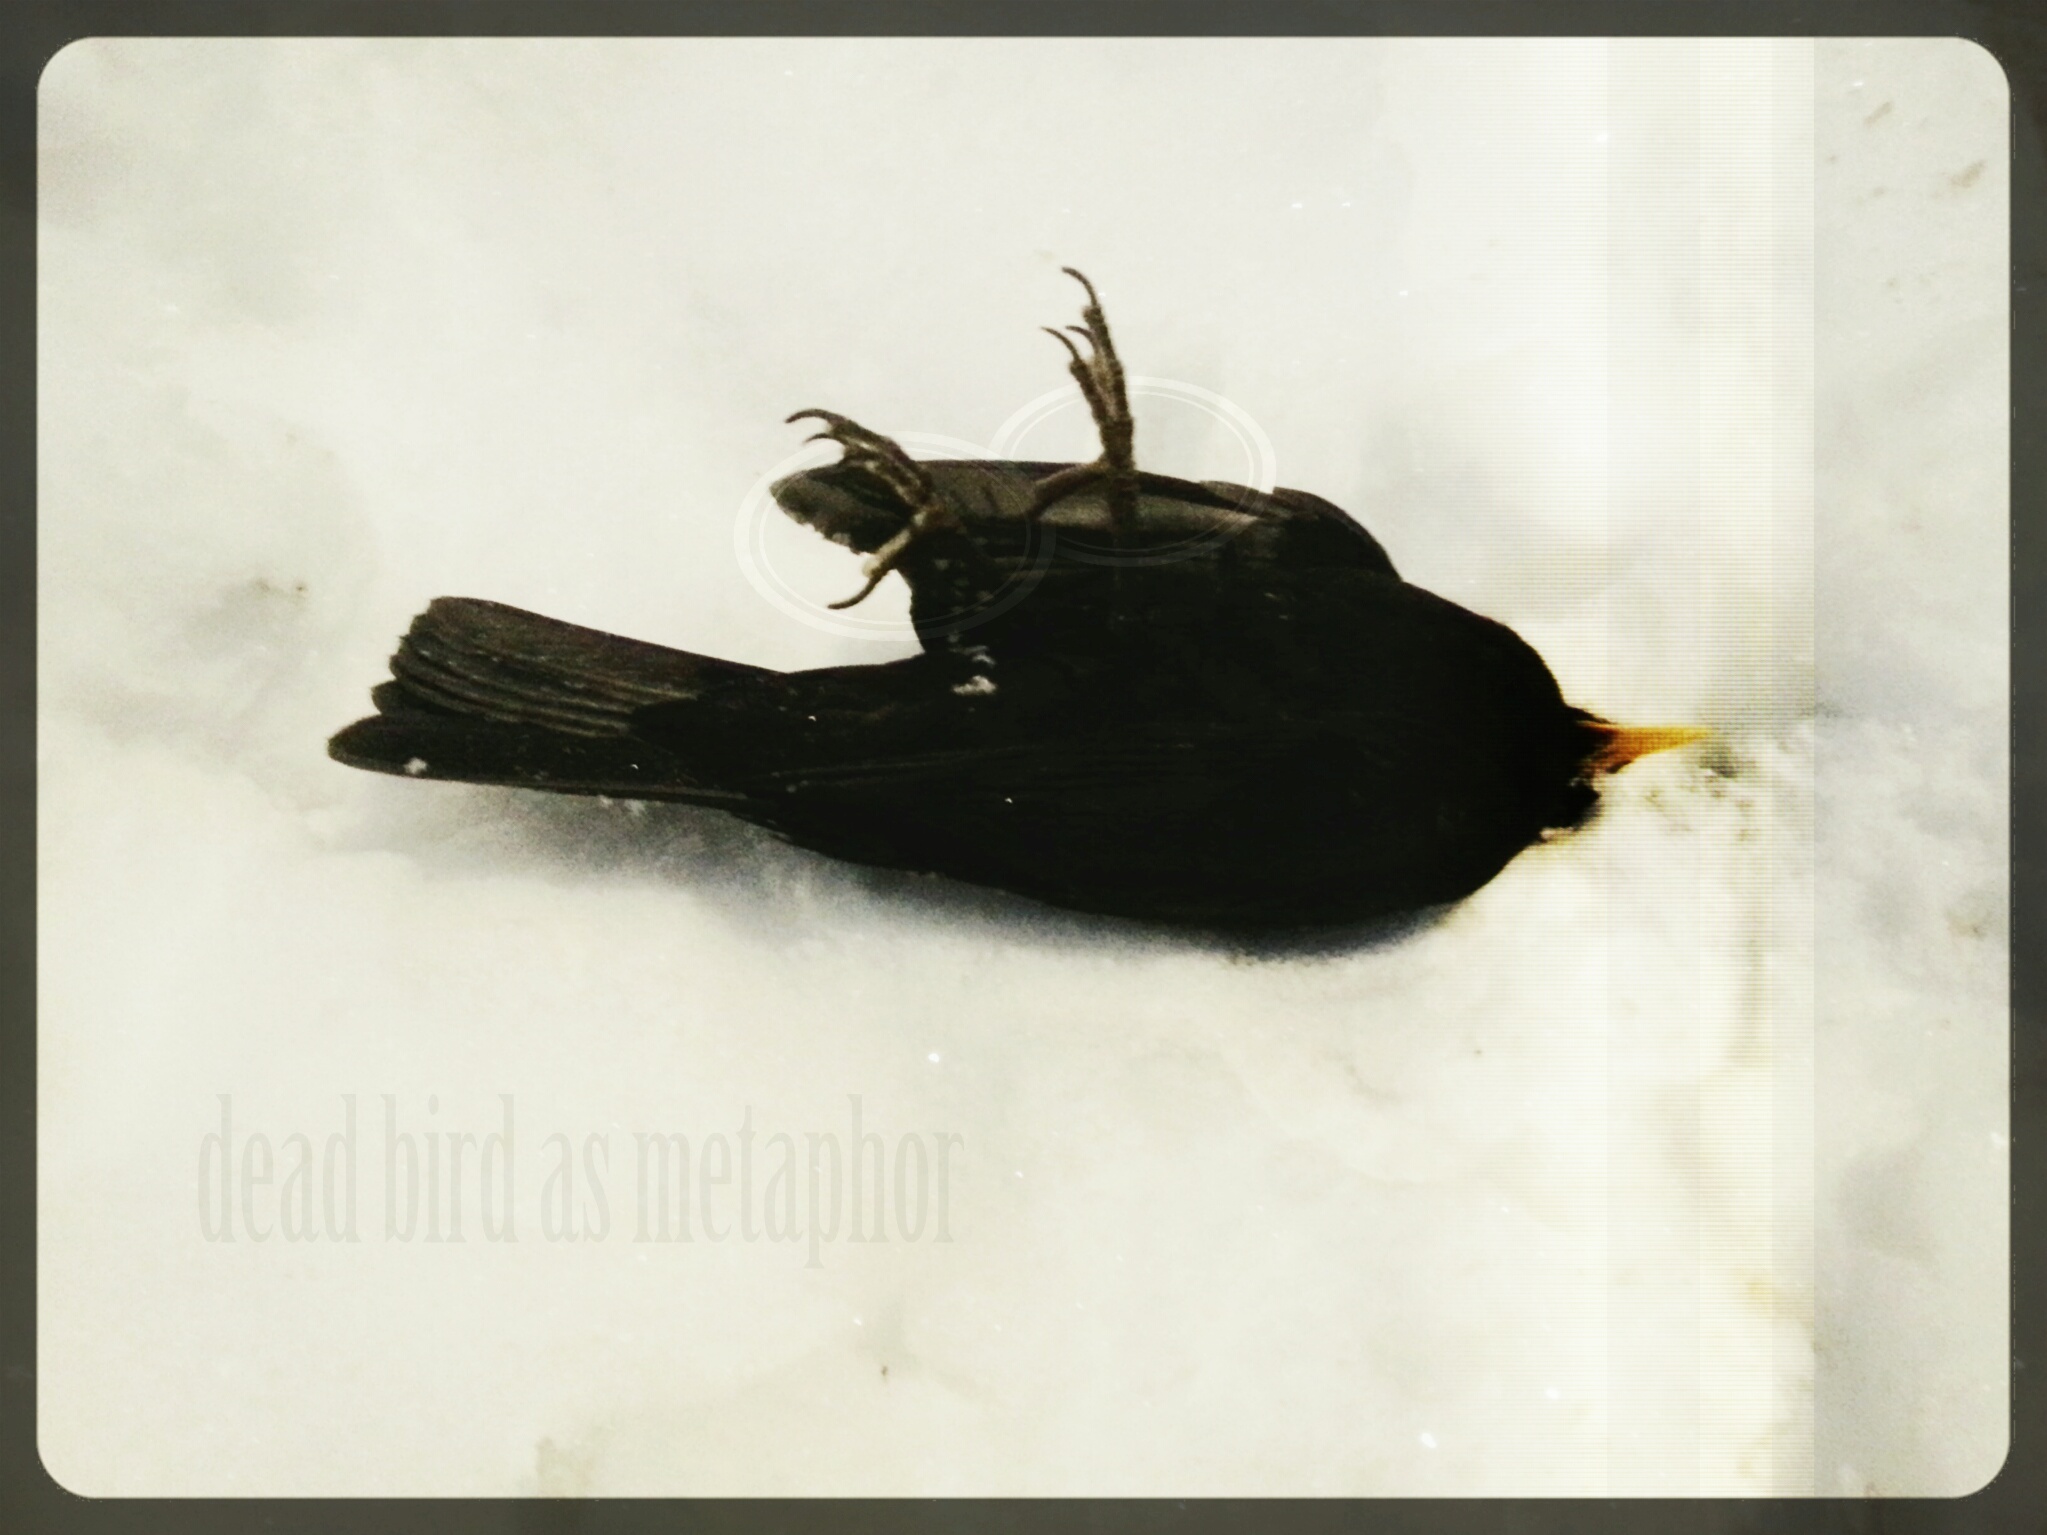 Dead Bird as Metaphor